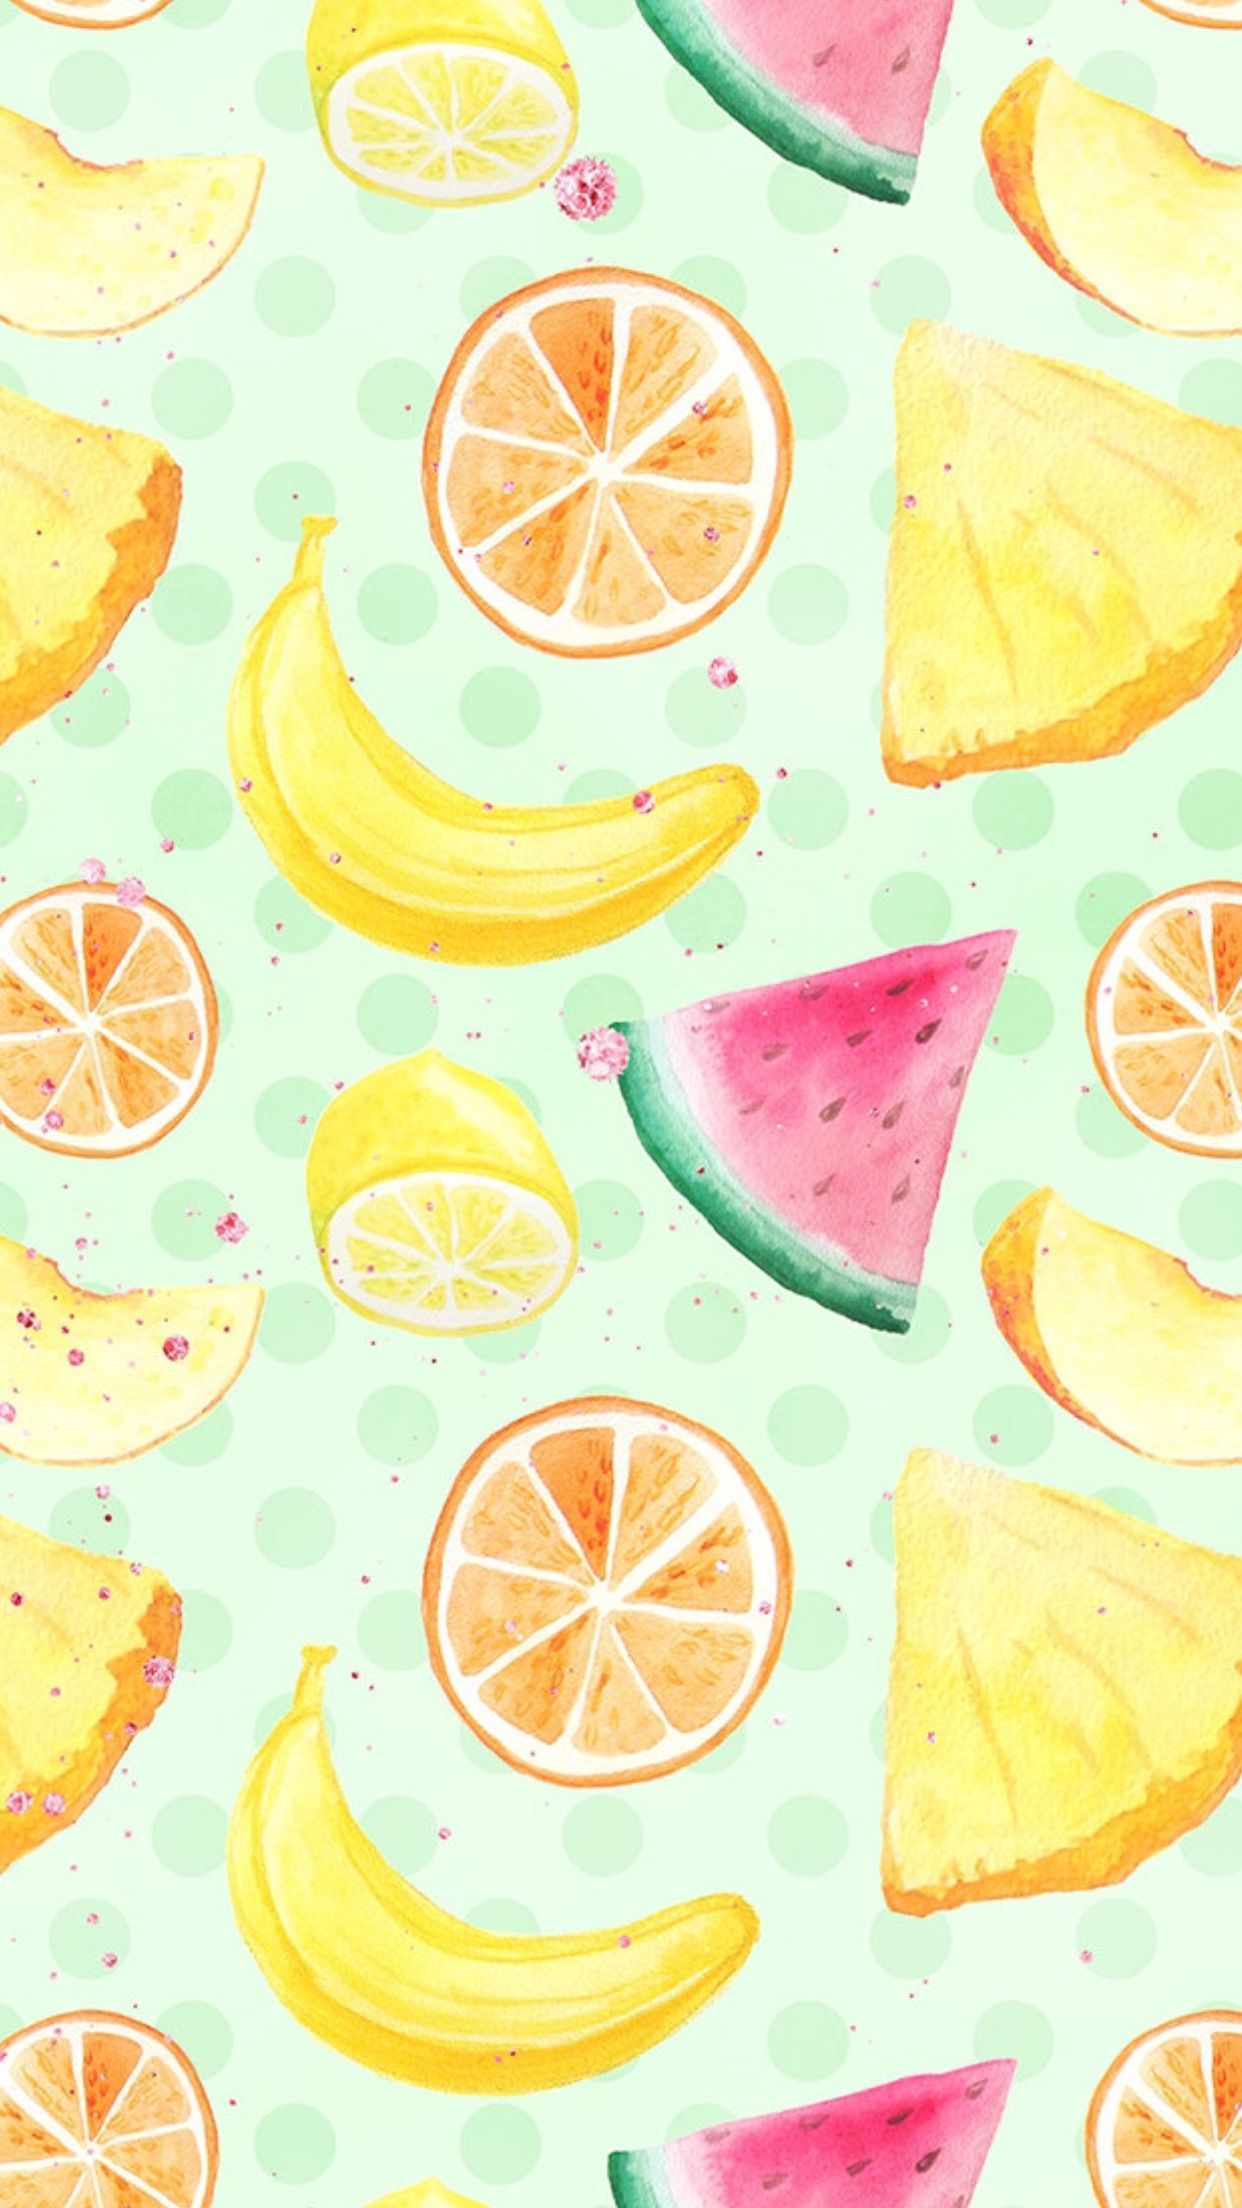 Wallpaper. Wallpaper iphone summer, Fruit wallpaper, Cute food wallpaper